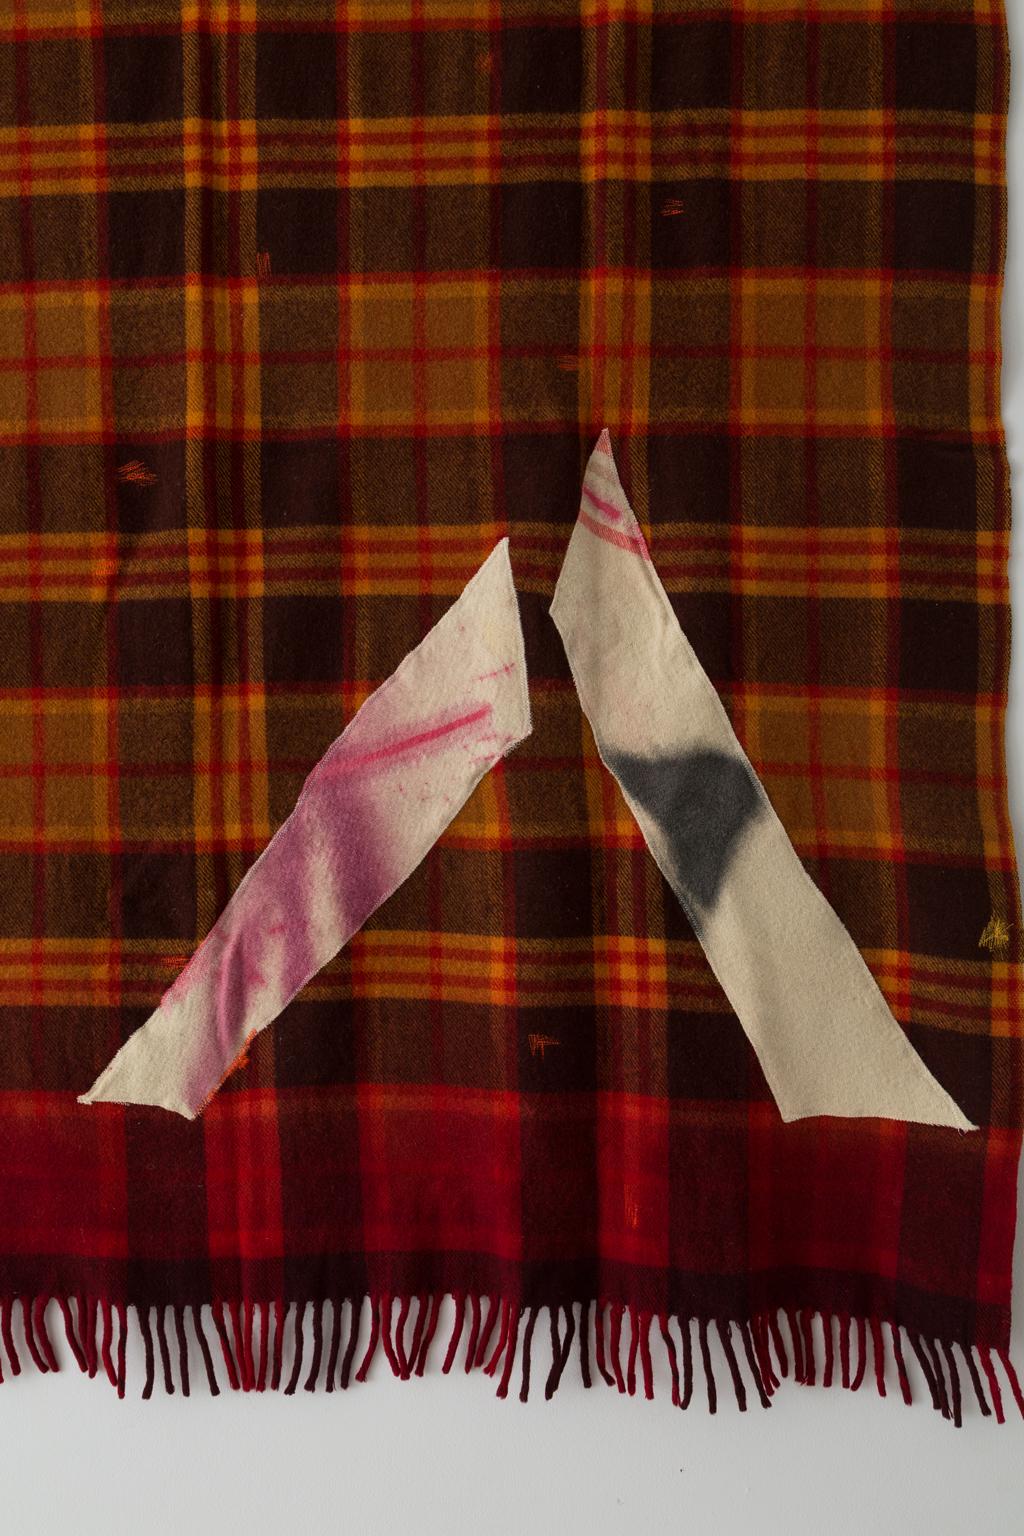 Dans le cadre du Blanket Project, Naomi Clark crée ce qu'elle appelle des Quilt Paintings. Elle redonne vie à de vieilles couvertures de camping en laine et en coton récupérées sur EBay, dans des marchés aux puces et des vide-greniers. Naomi décrit